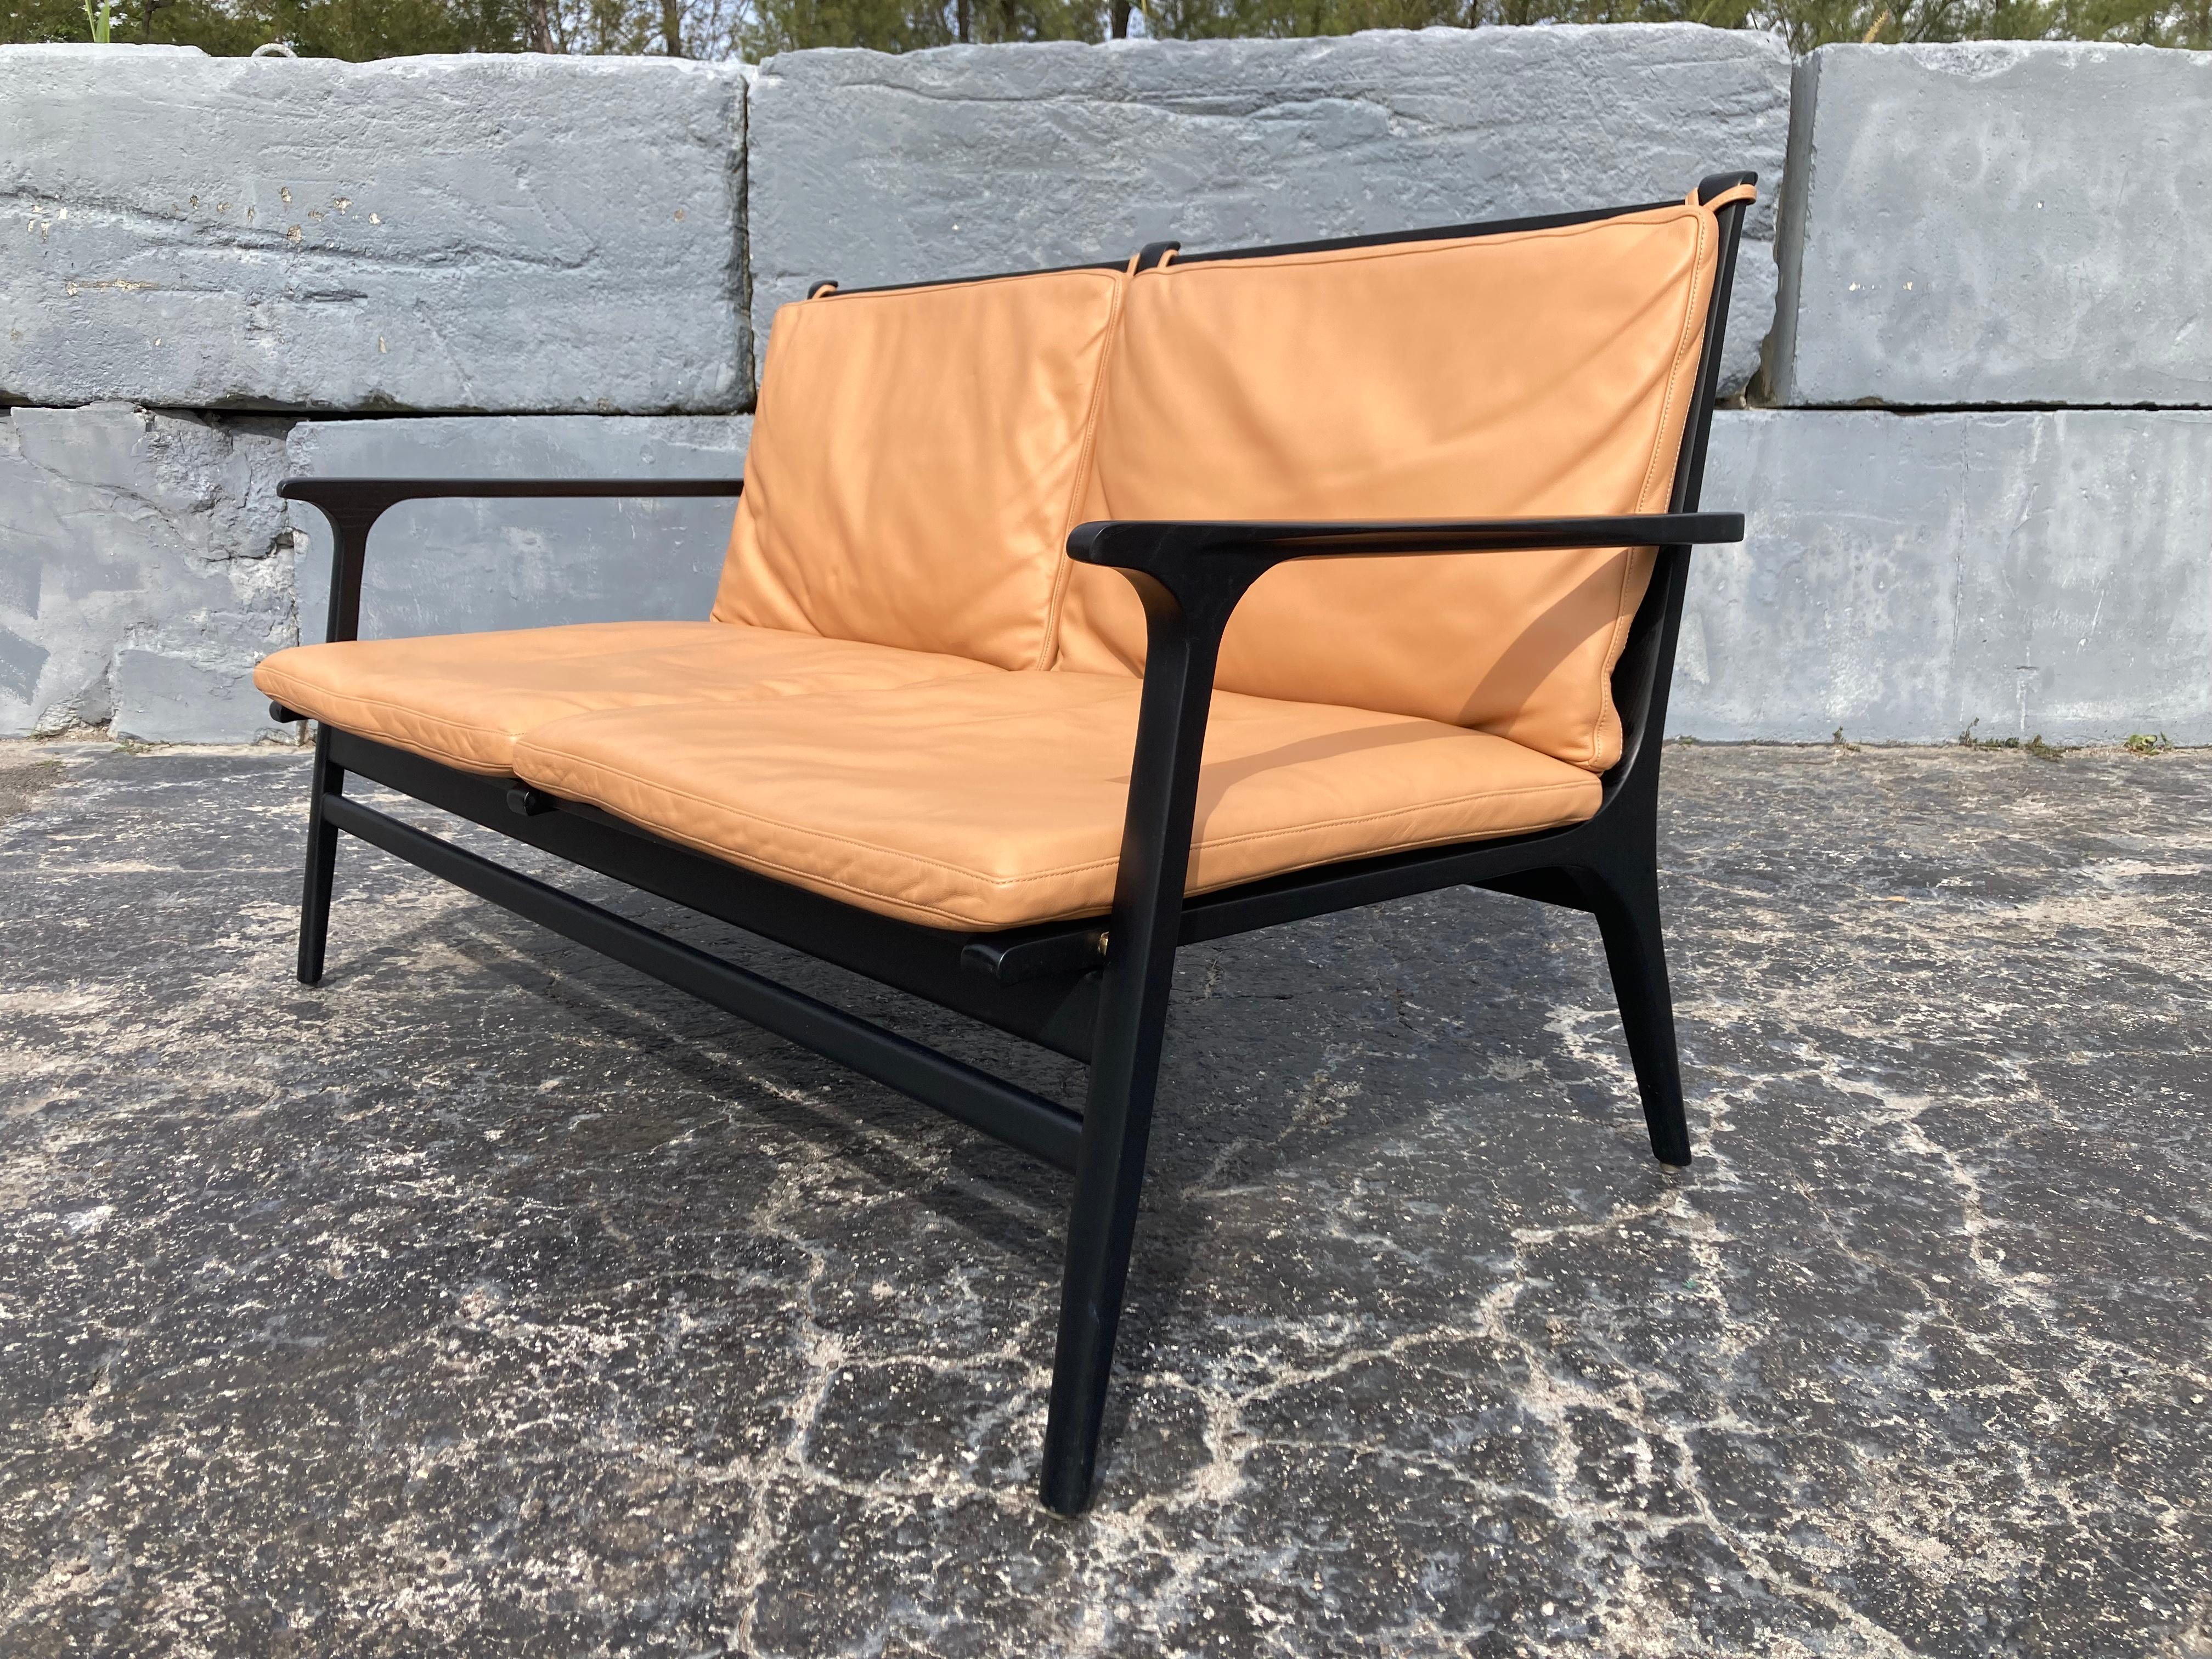 Rén Lounge Chair Zweisitzer-Sofa von Stellar Works entworfen von Space Copenhagen, Eiche, Leder. Passender Stuhl verfügbar.